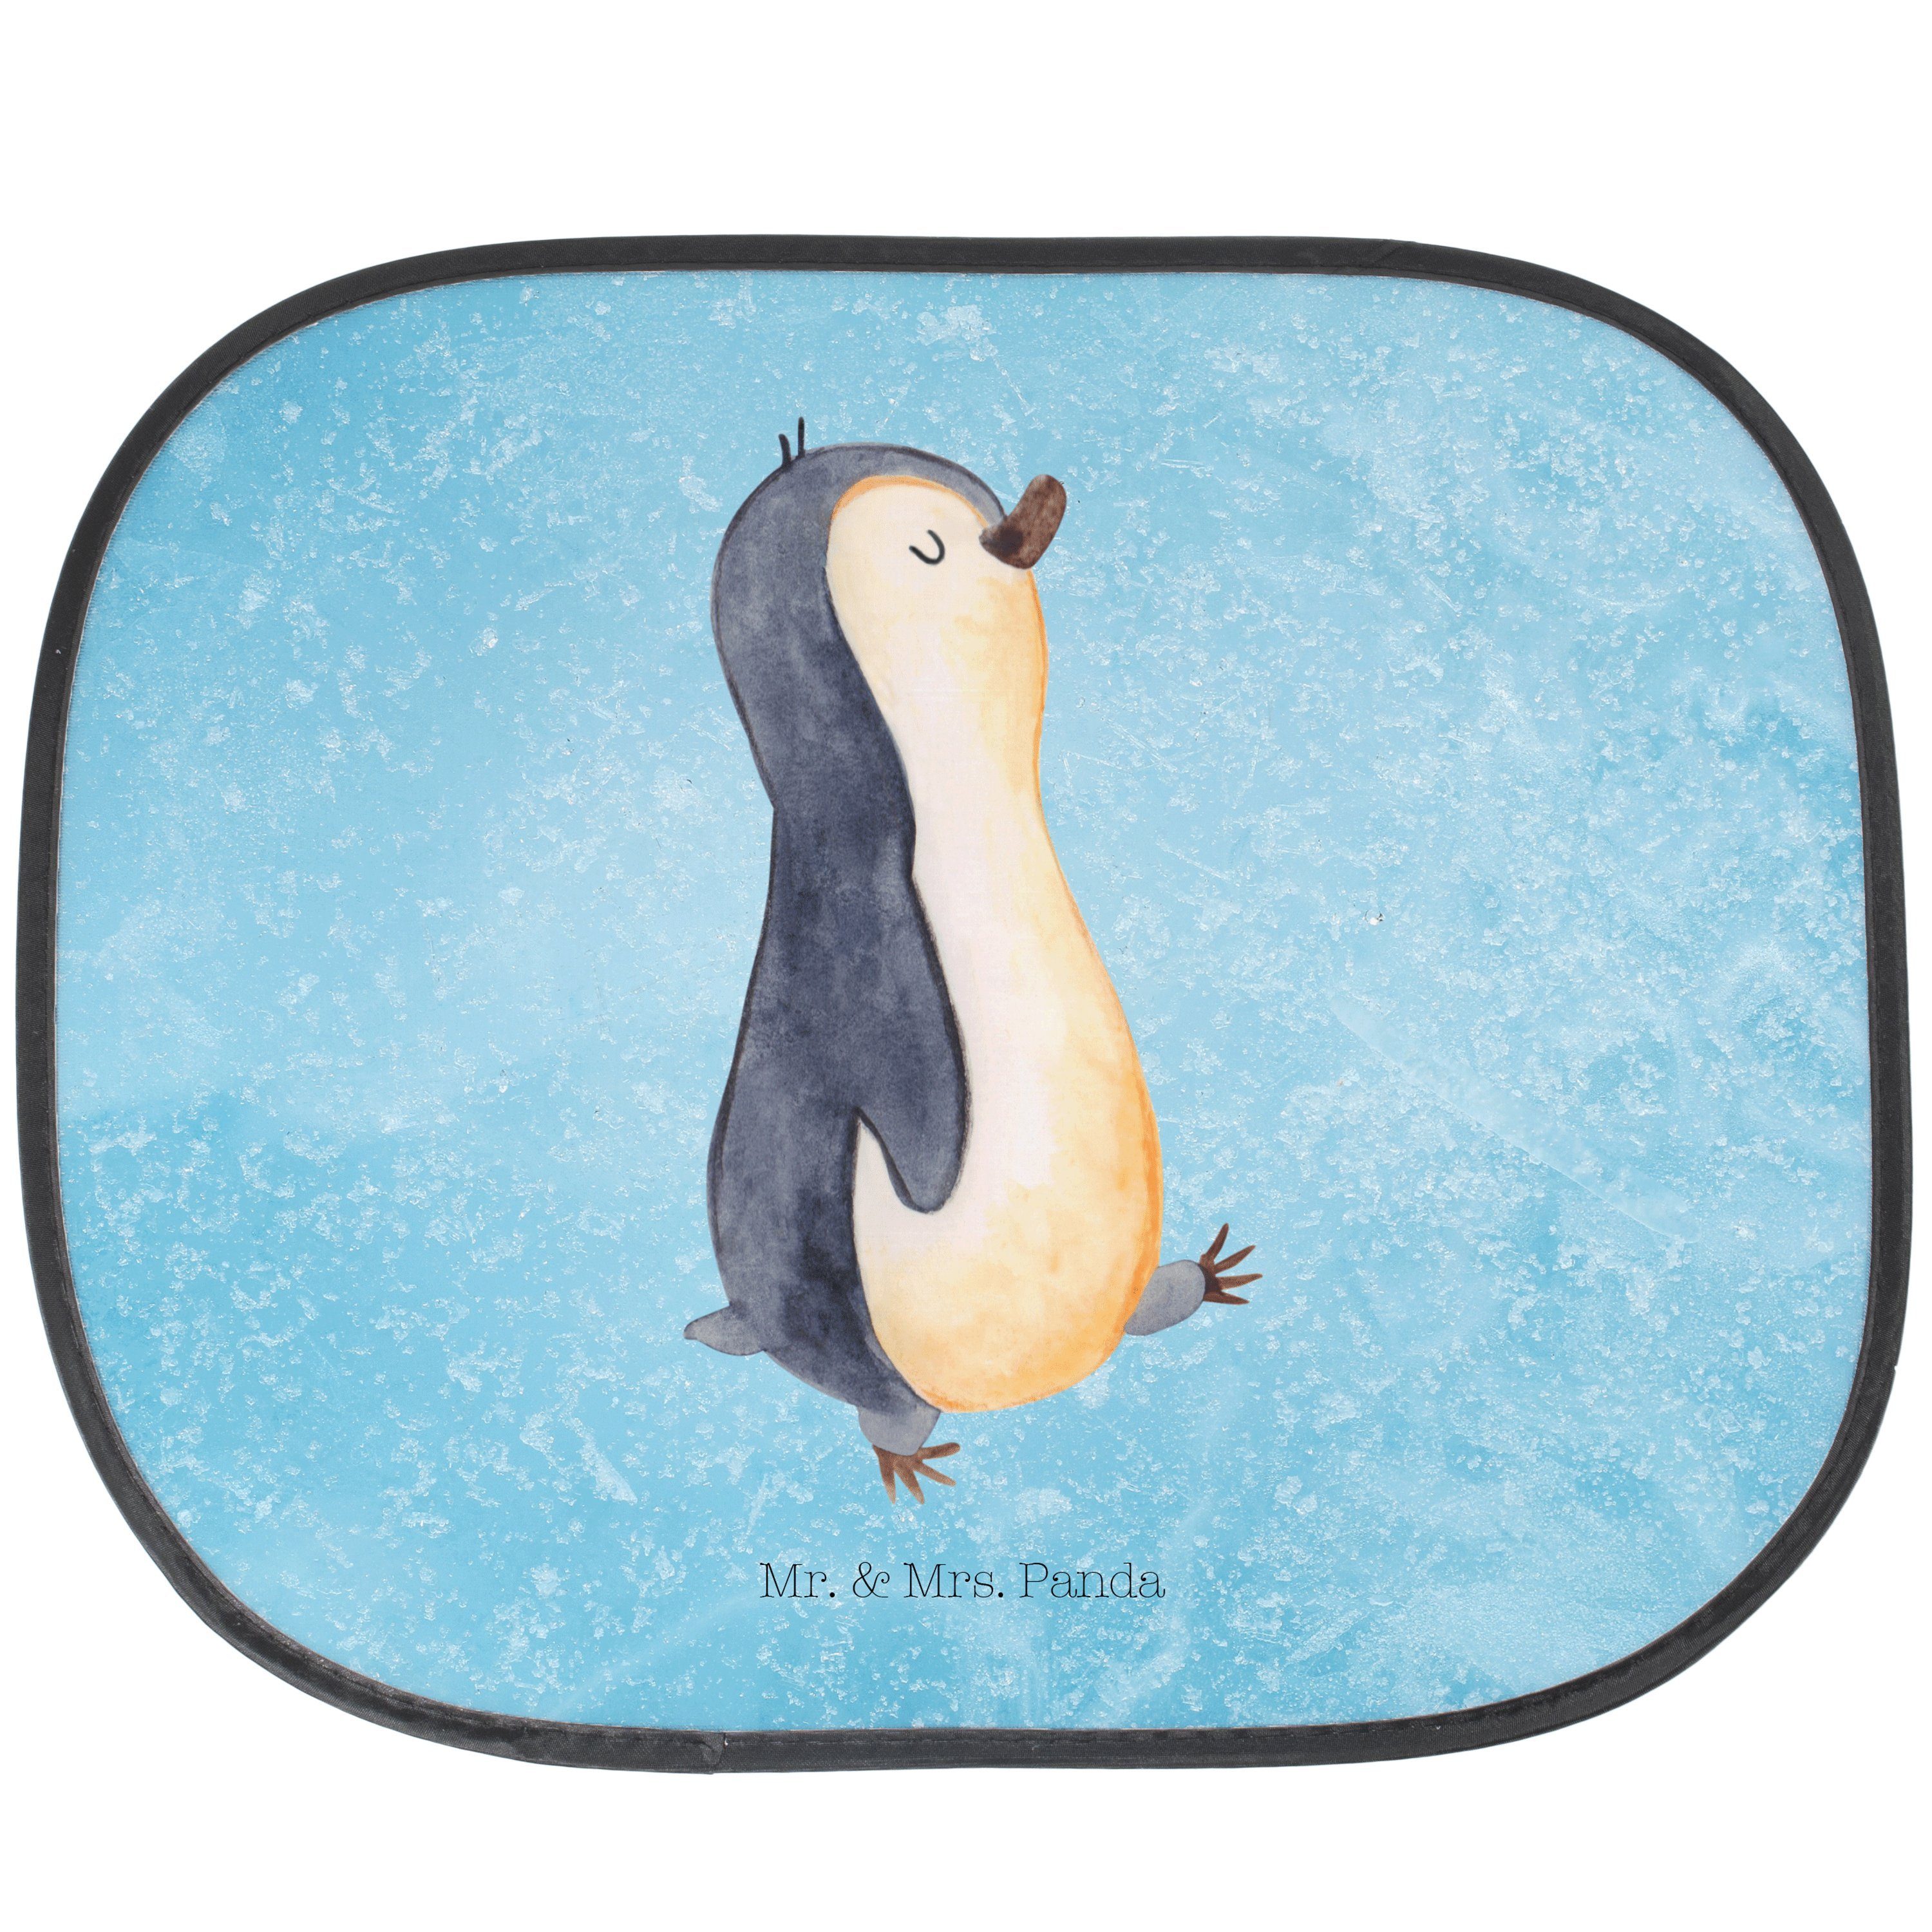 Sonnenschutz Pinguin marschierend - Eisblau - Geschenk, Sonnenschutz Kinder, Sonne, Mr. & Mrs. Panda, Seidenmatt